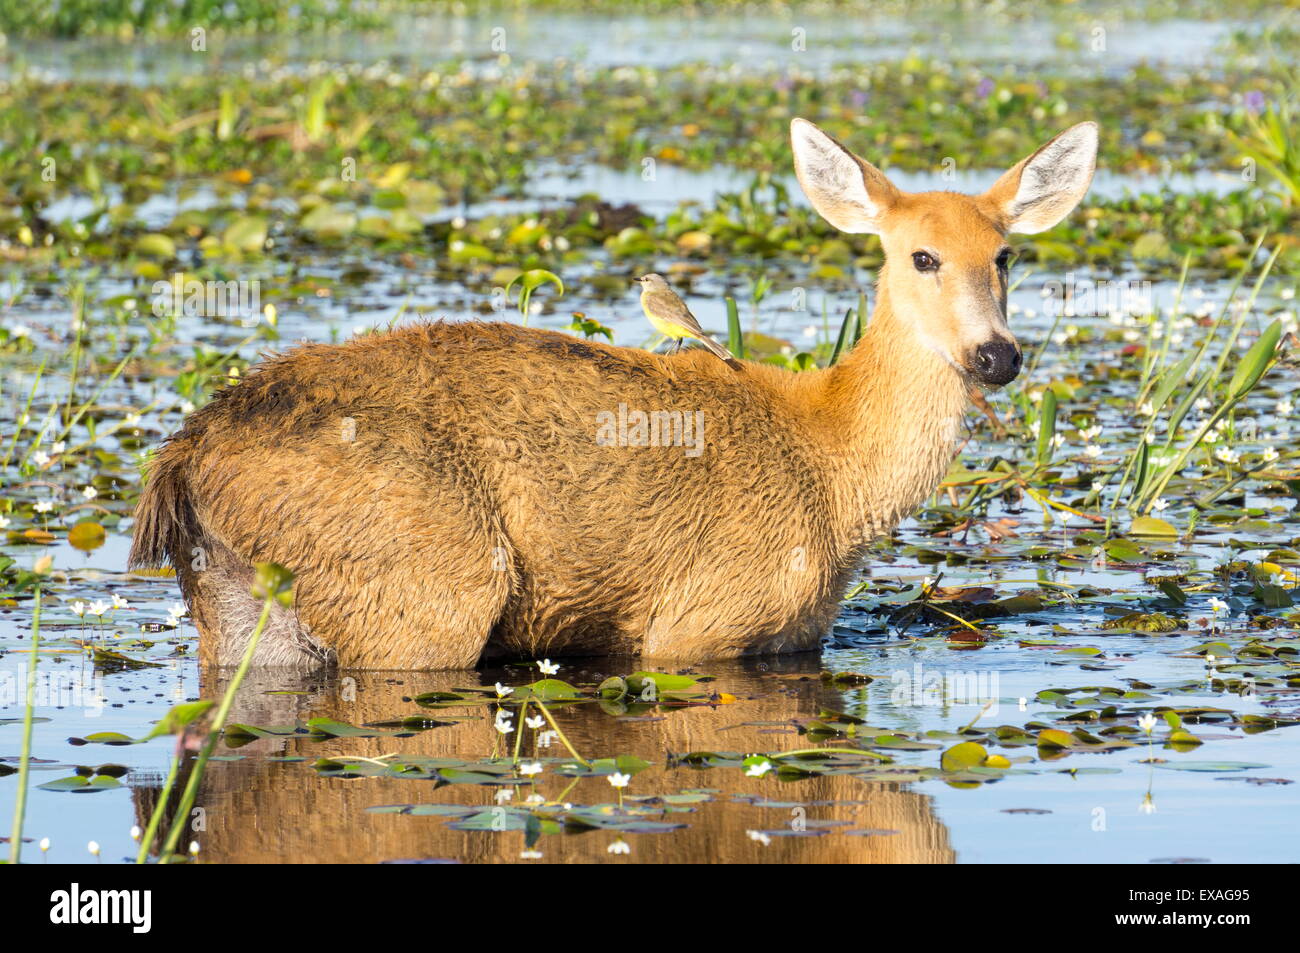 Raro pampas ciervo de pantano, parque nacional Iberá, Argentina, Sudamérica Foto de stock